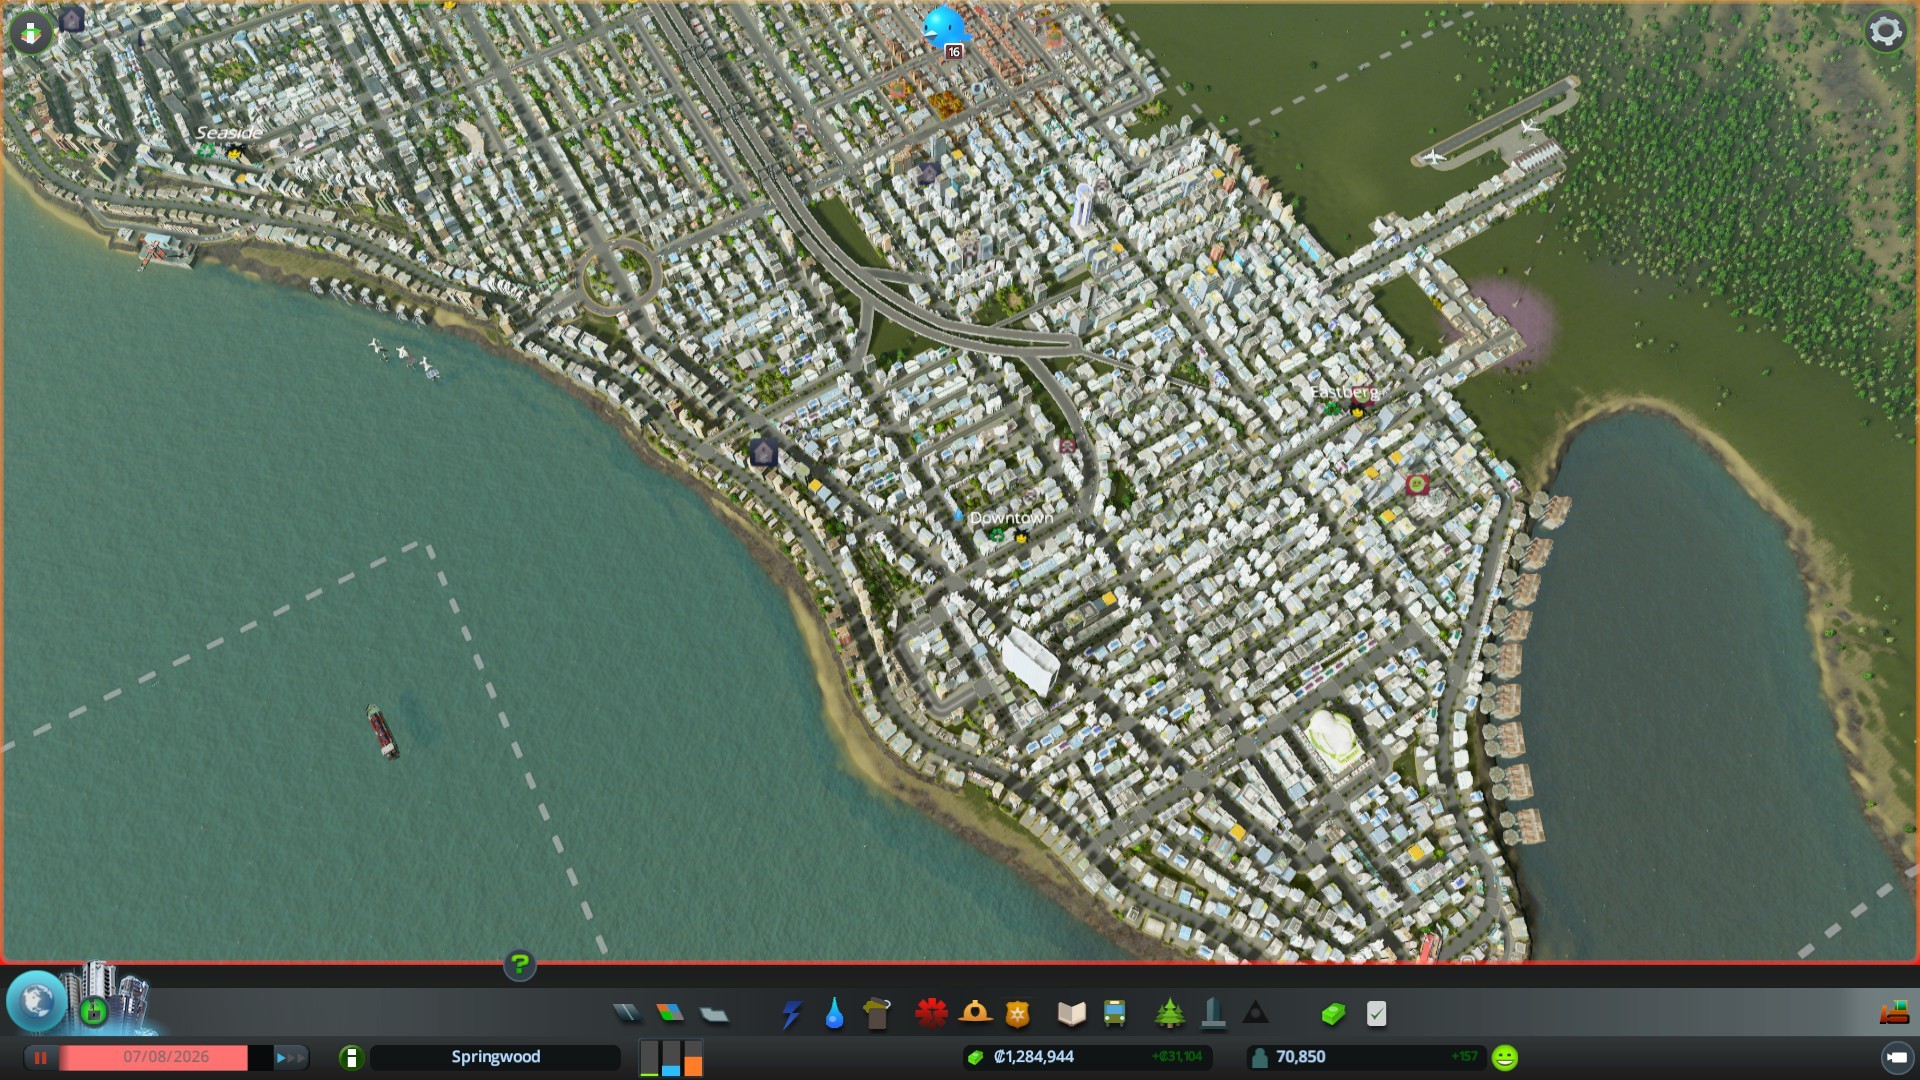 Cities skylines planning